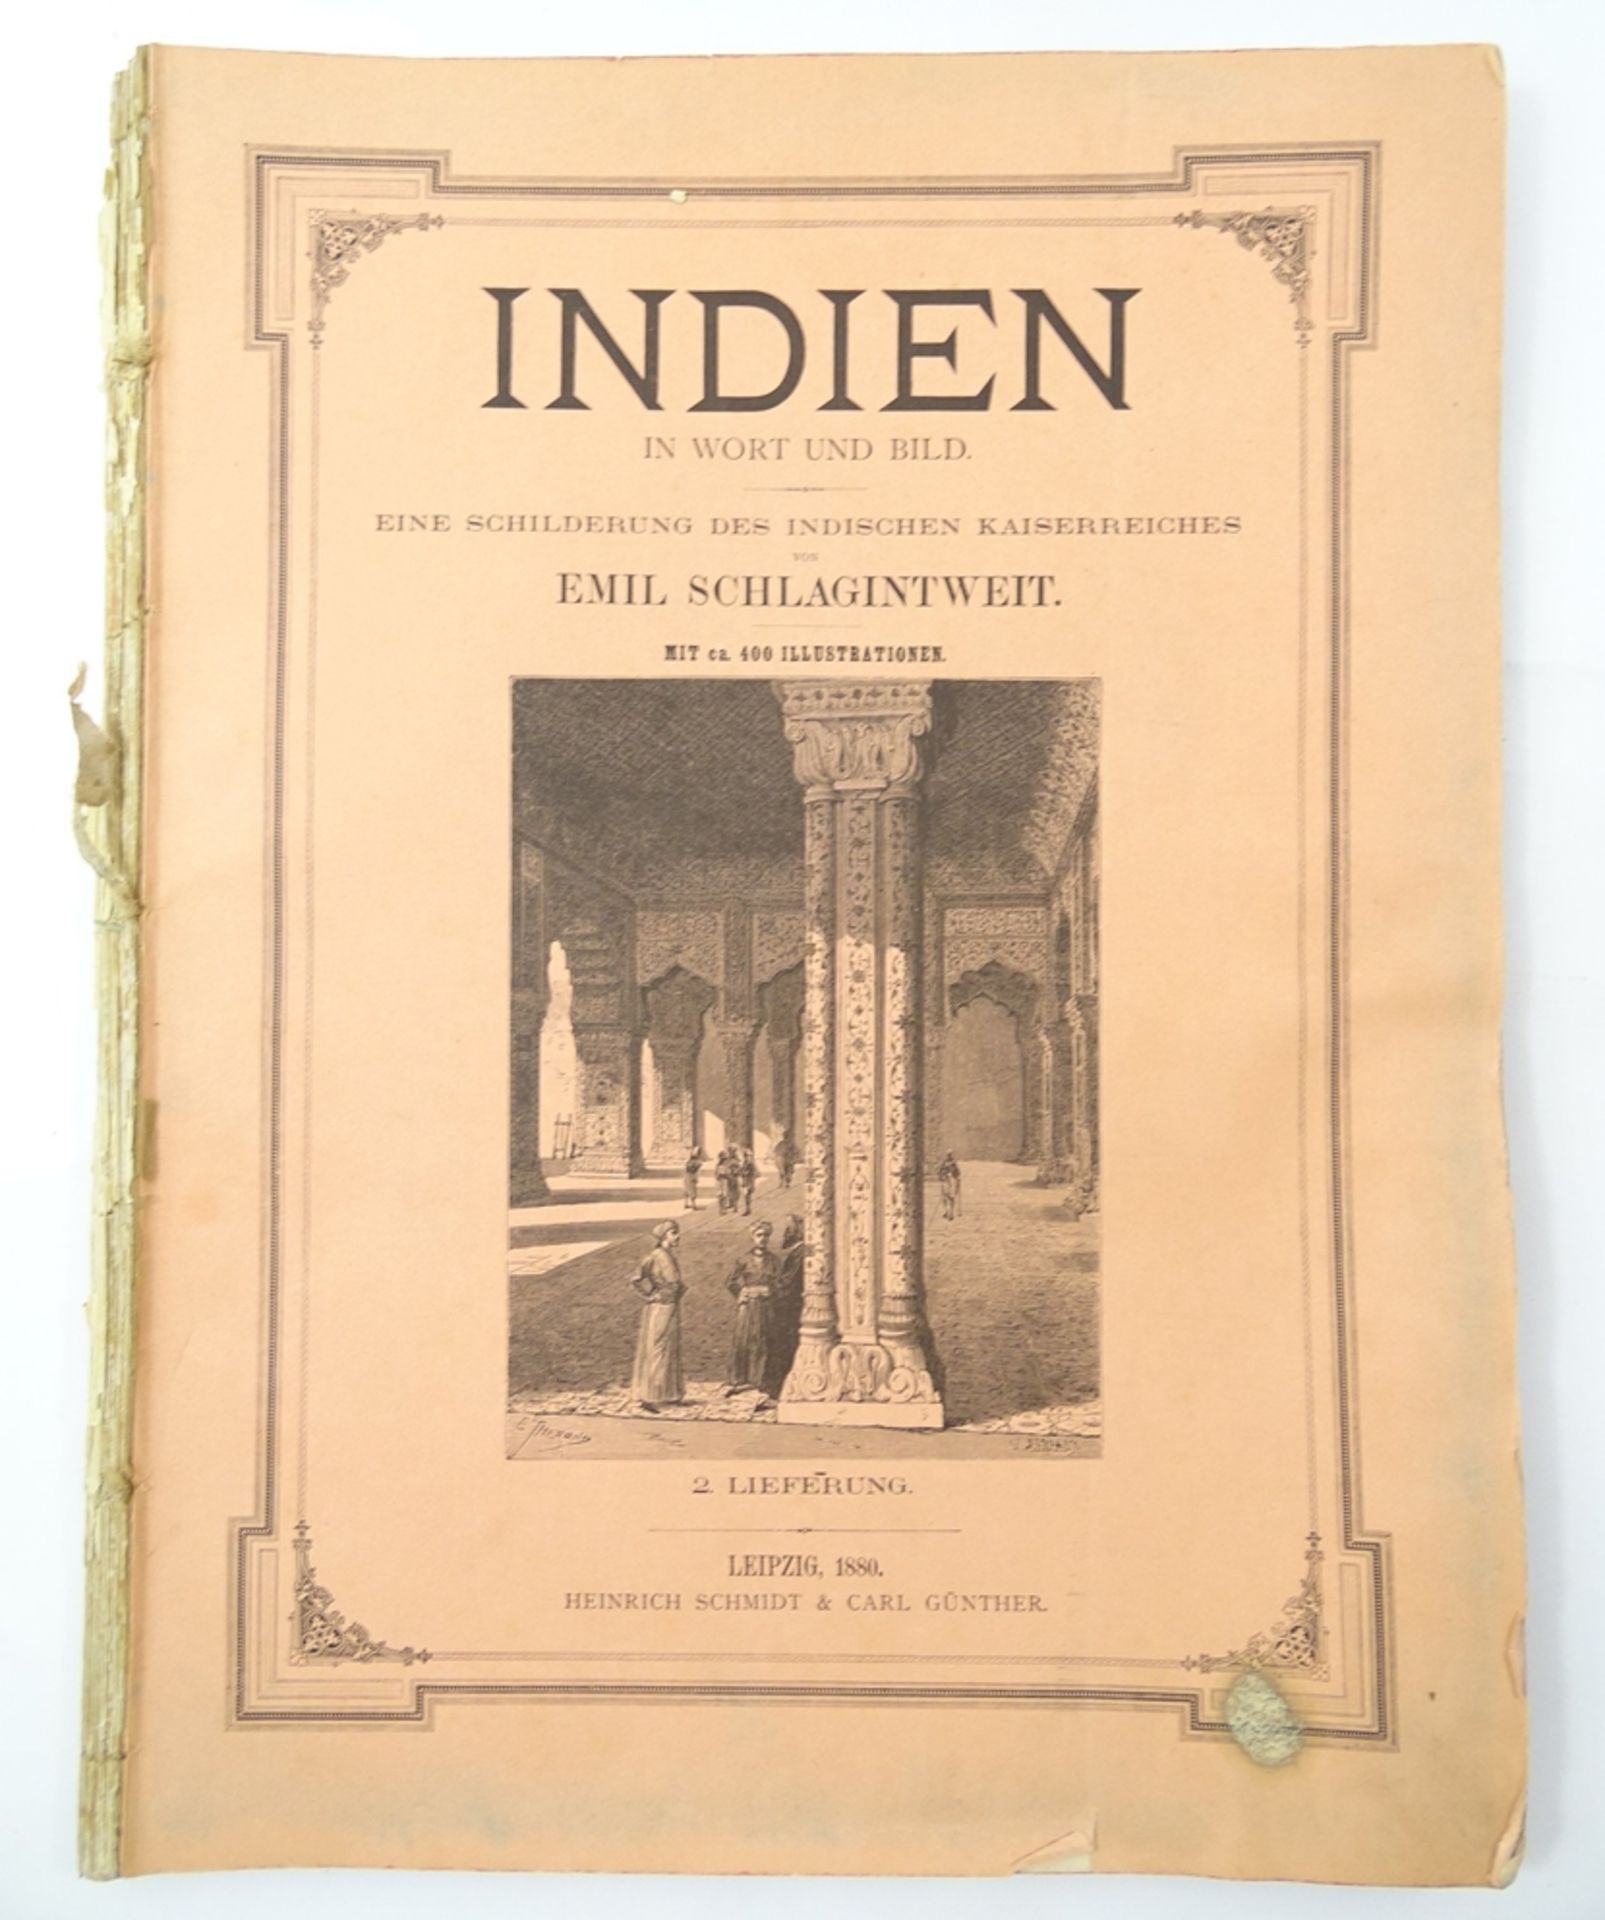 Emil Schlagintweit, Indien in Wort und Bild, 2. Lieferung, Leipzig 1880, Heinrich Schmidt & Carl Gü